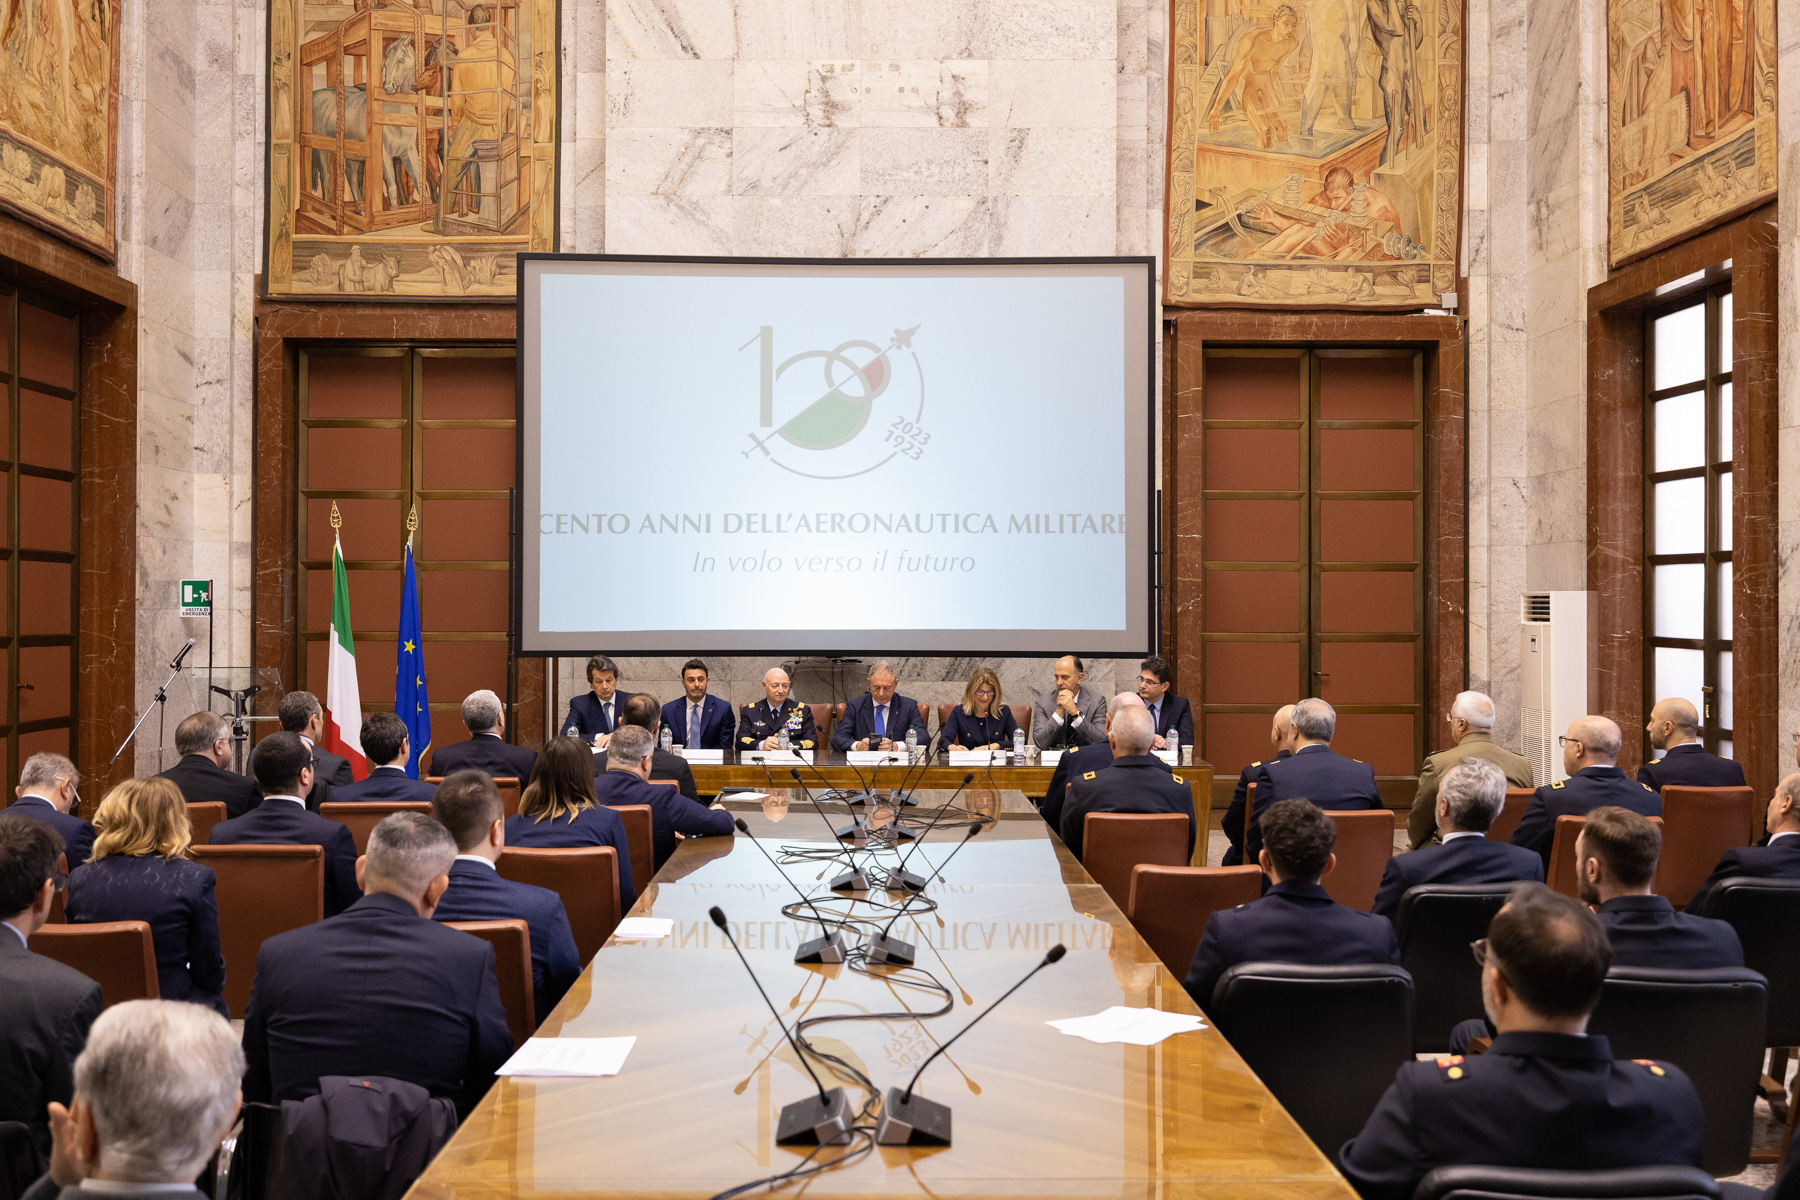 Presentación de la emisión postal conjunta dedicada al Centenario de las Fuerzas Aéreas italianas